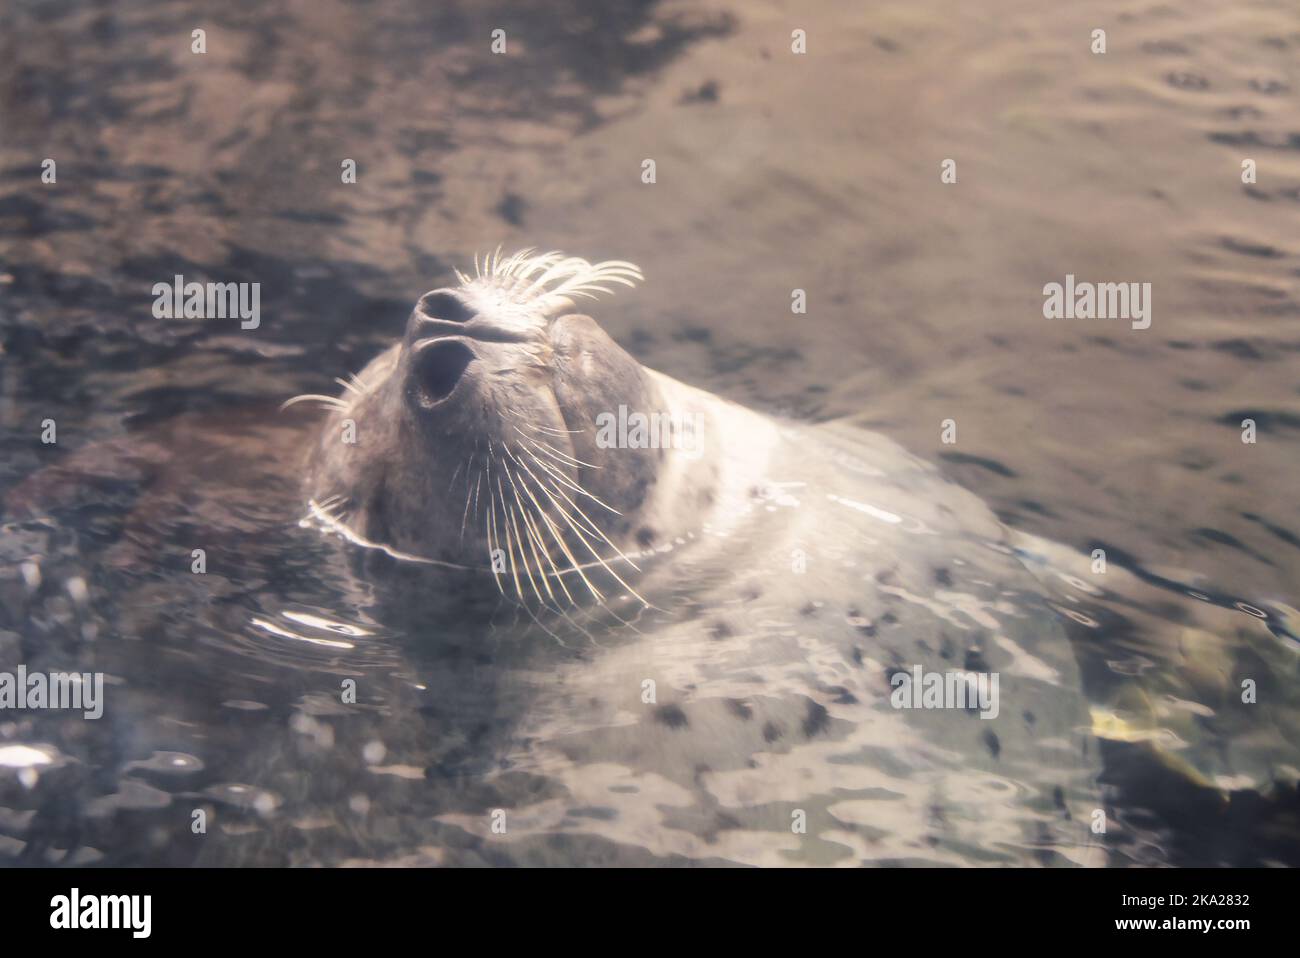 Grey Harbour Seal at Boston Aquarium, Boston, Mass, USA Stock Photo